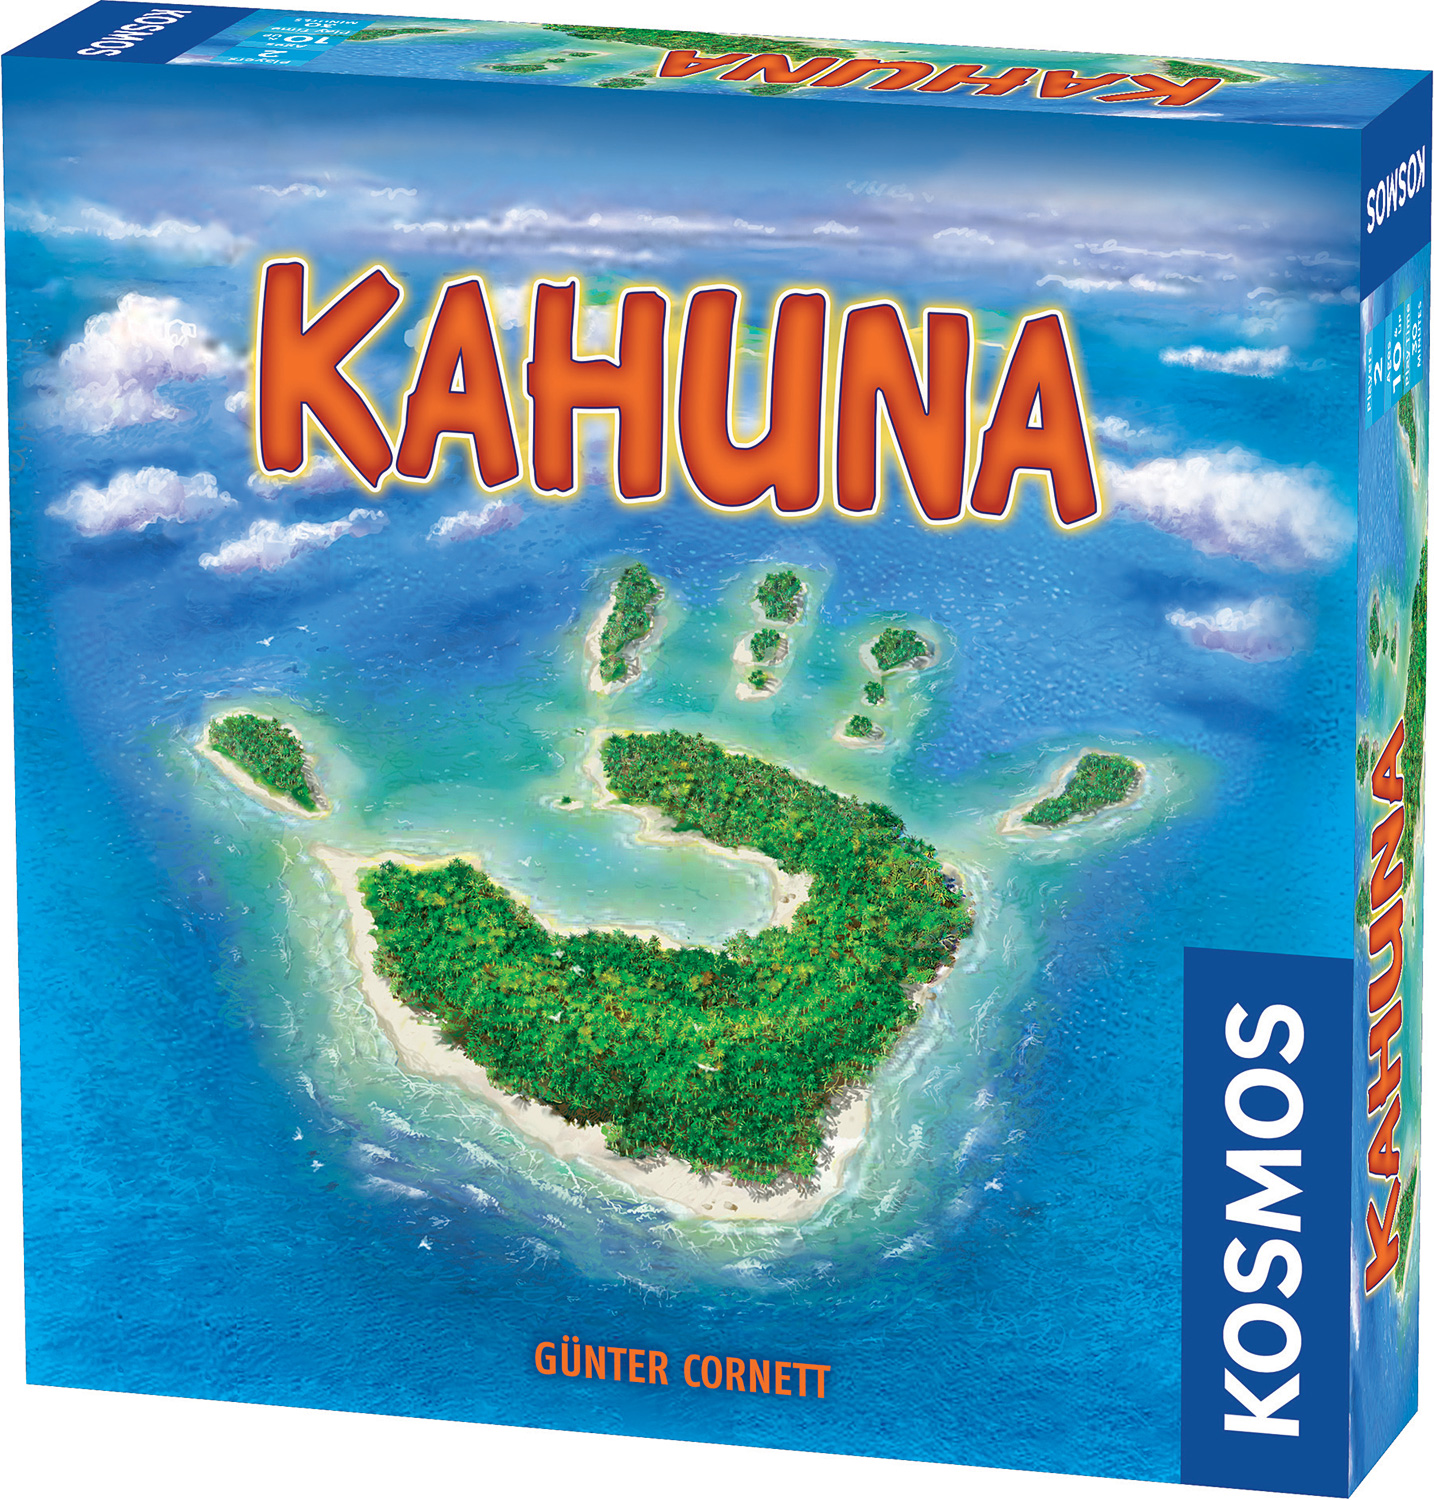 Kahuna (2-player)